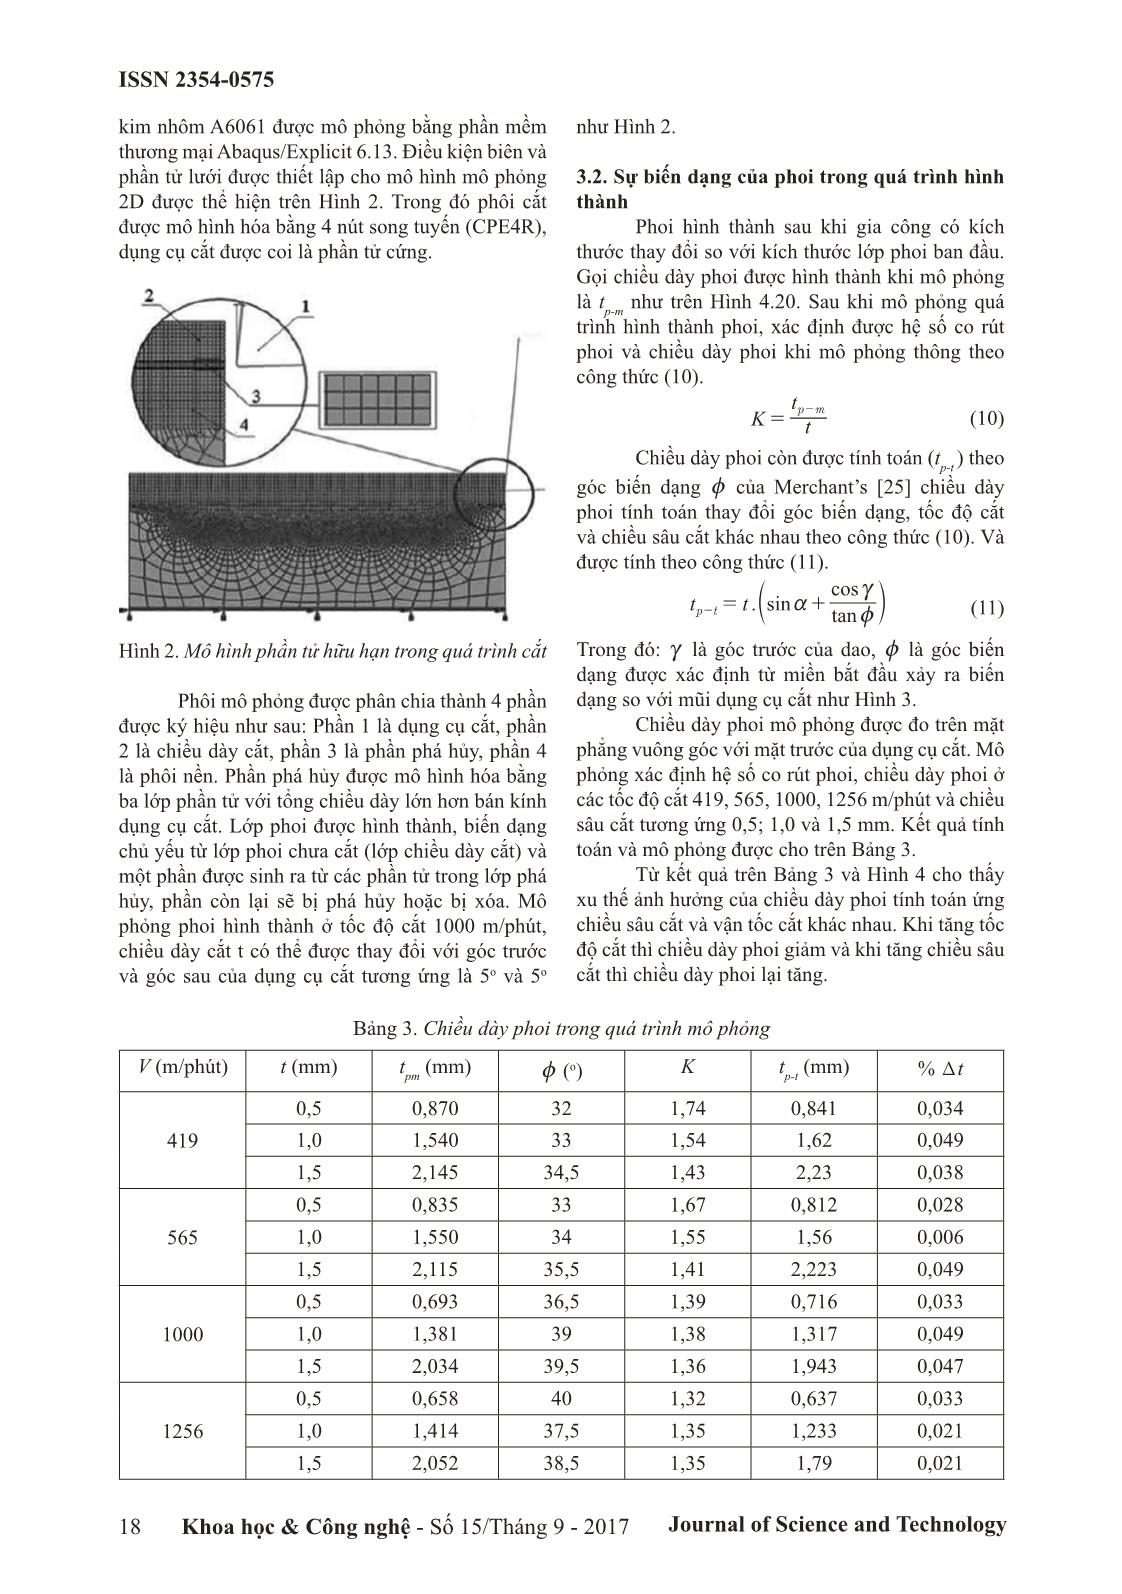 Nghiên cứu sự biến dạng của phoi khi mô phỏng quá trình gia công hợp kim nhôm A6061 trang 3